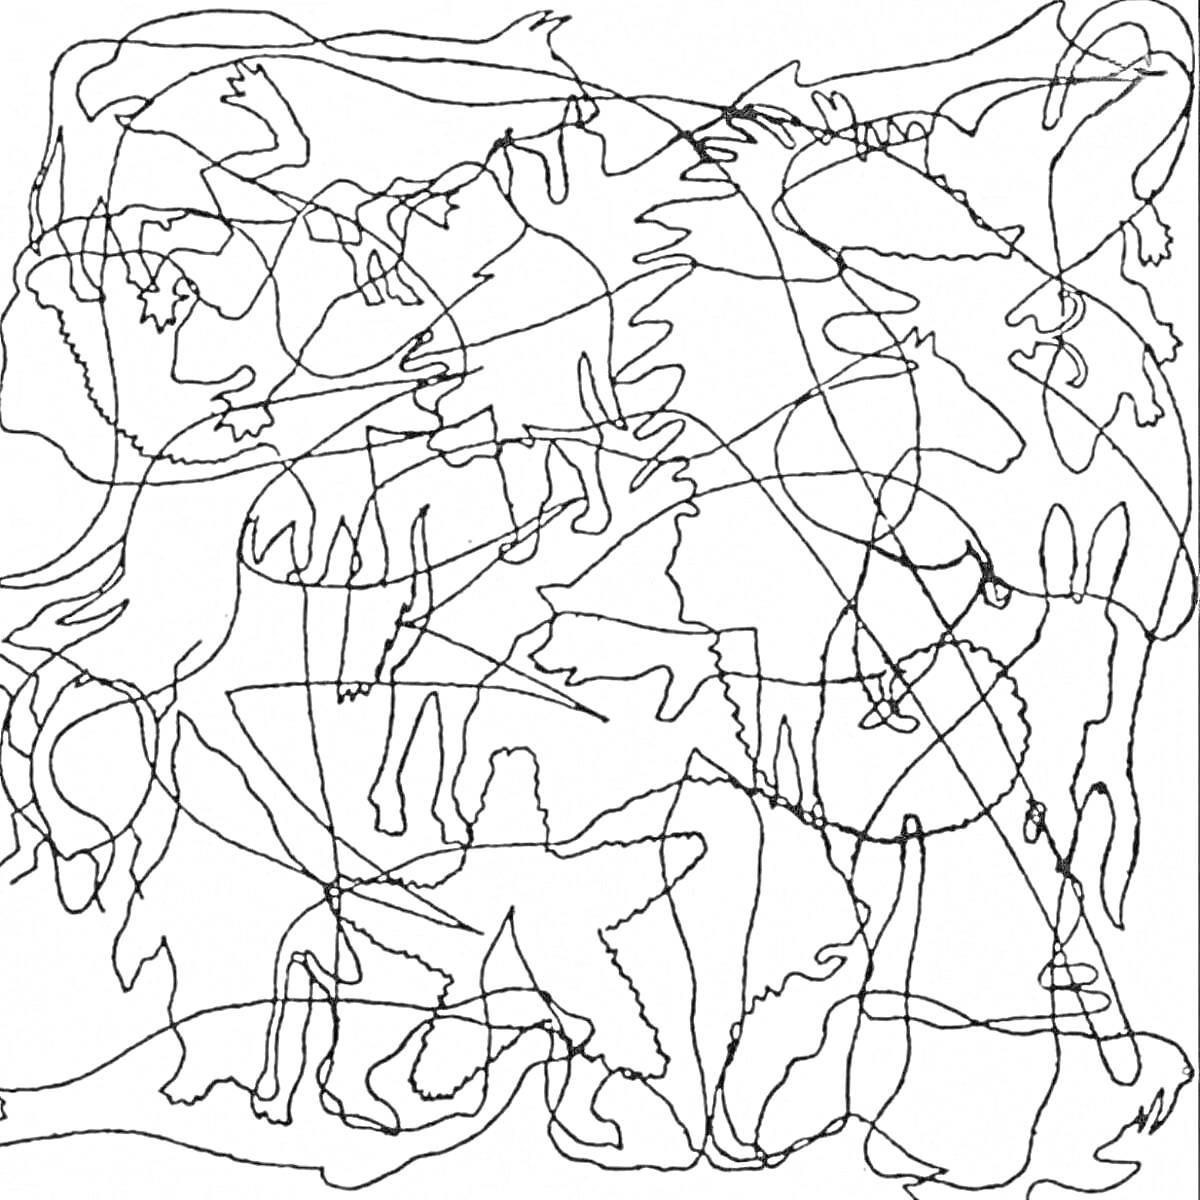 Раскраска Животные среди линий - собака, кролик, слон, лошадь, лев, коза, бык, олень, верблюд, зебра, кот